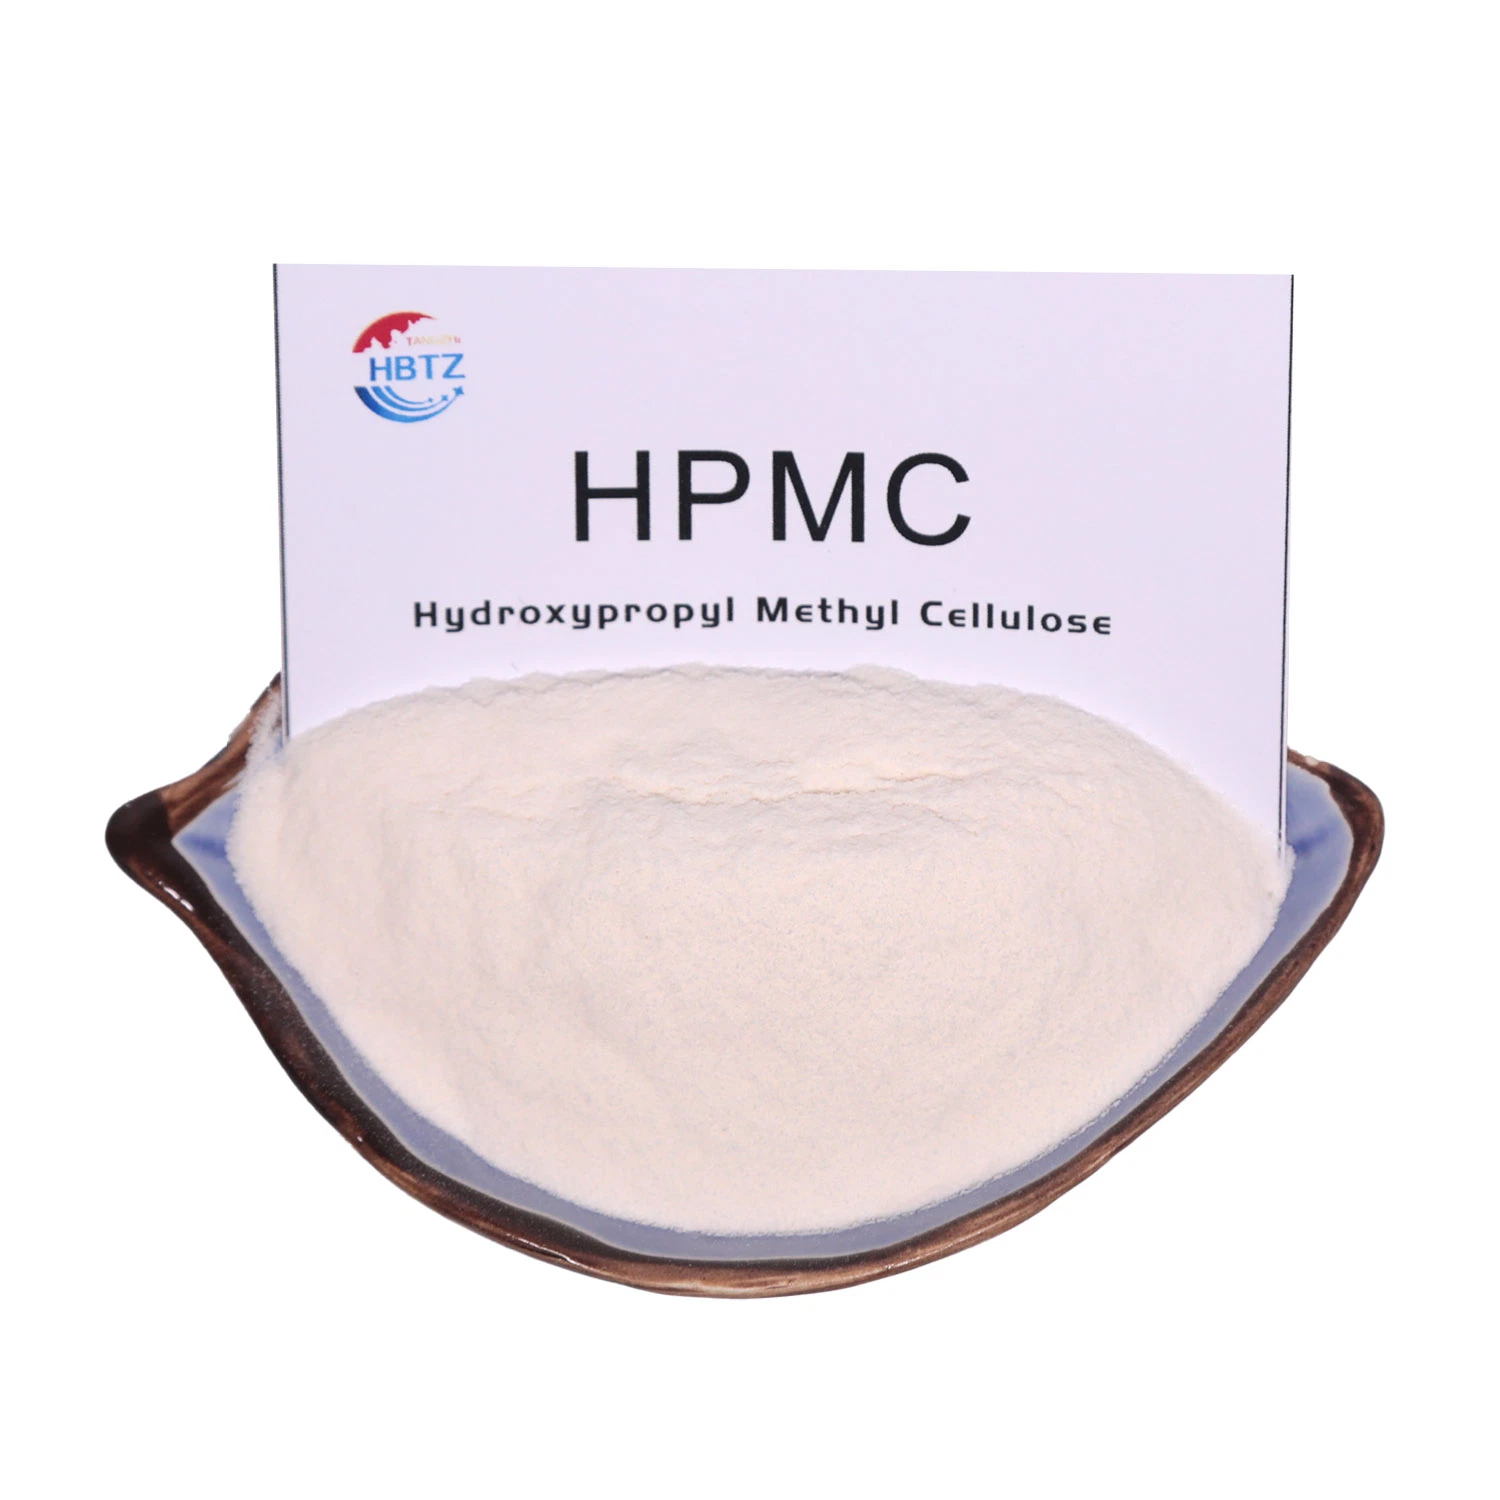 HPMC espesante Hydroxypropyl química metil celulosa HPMC con alta calidad y la retención de agua